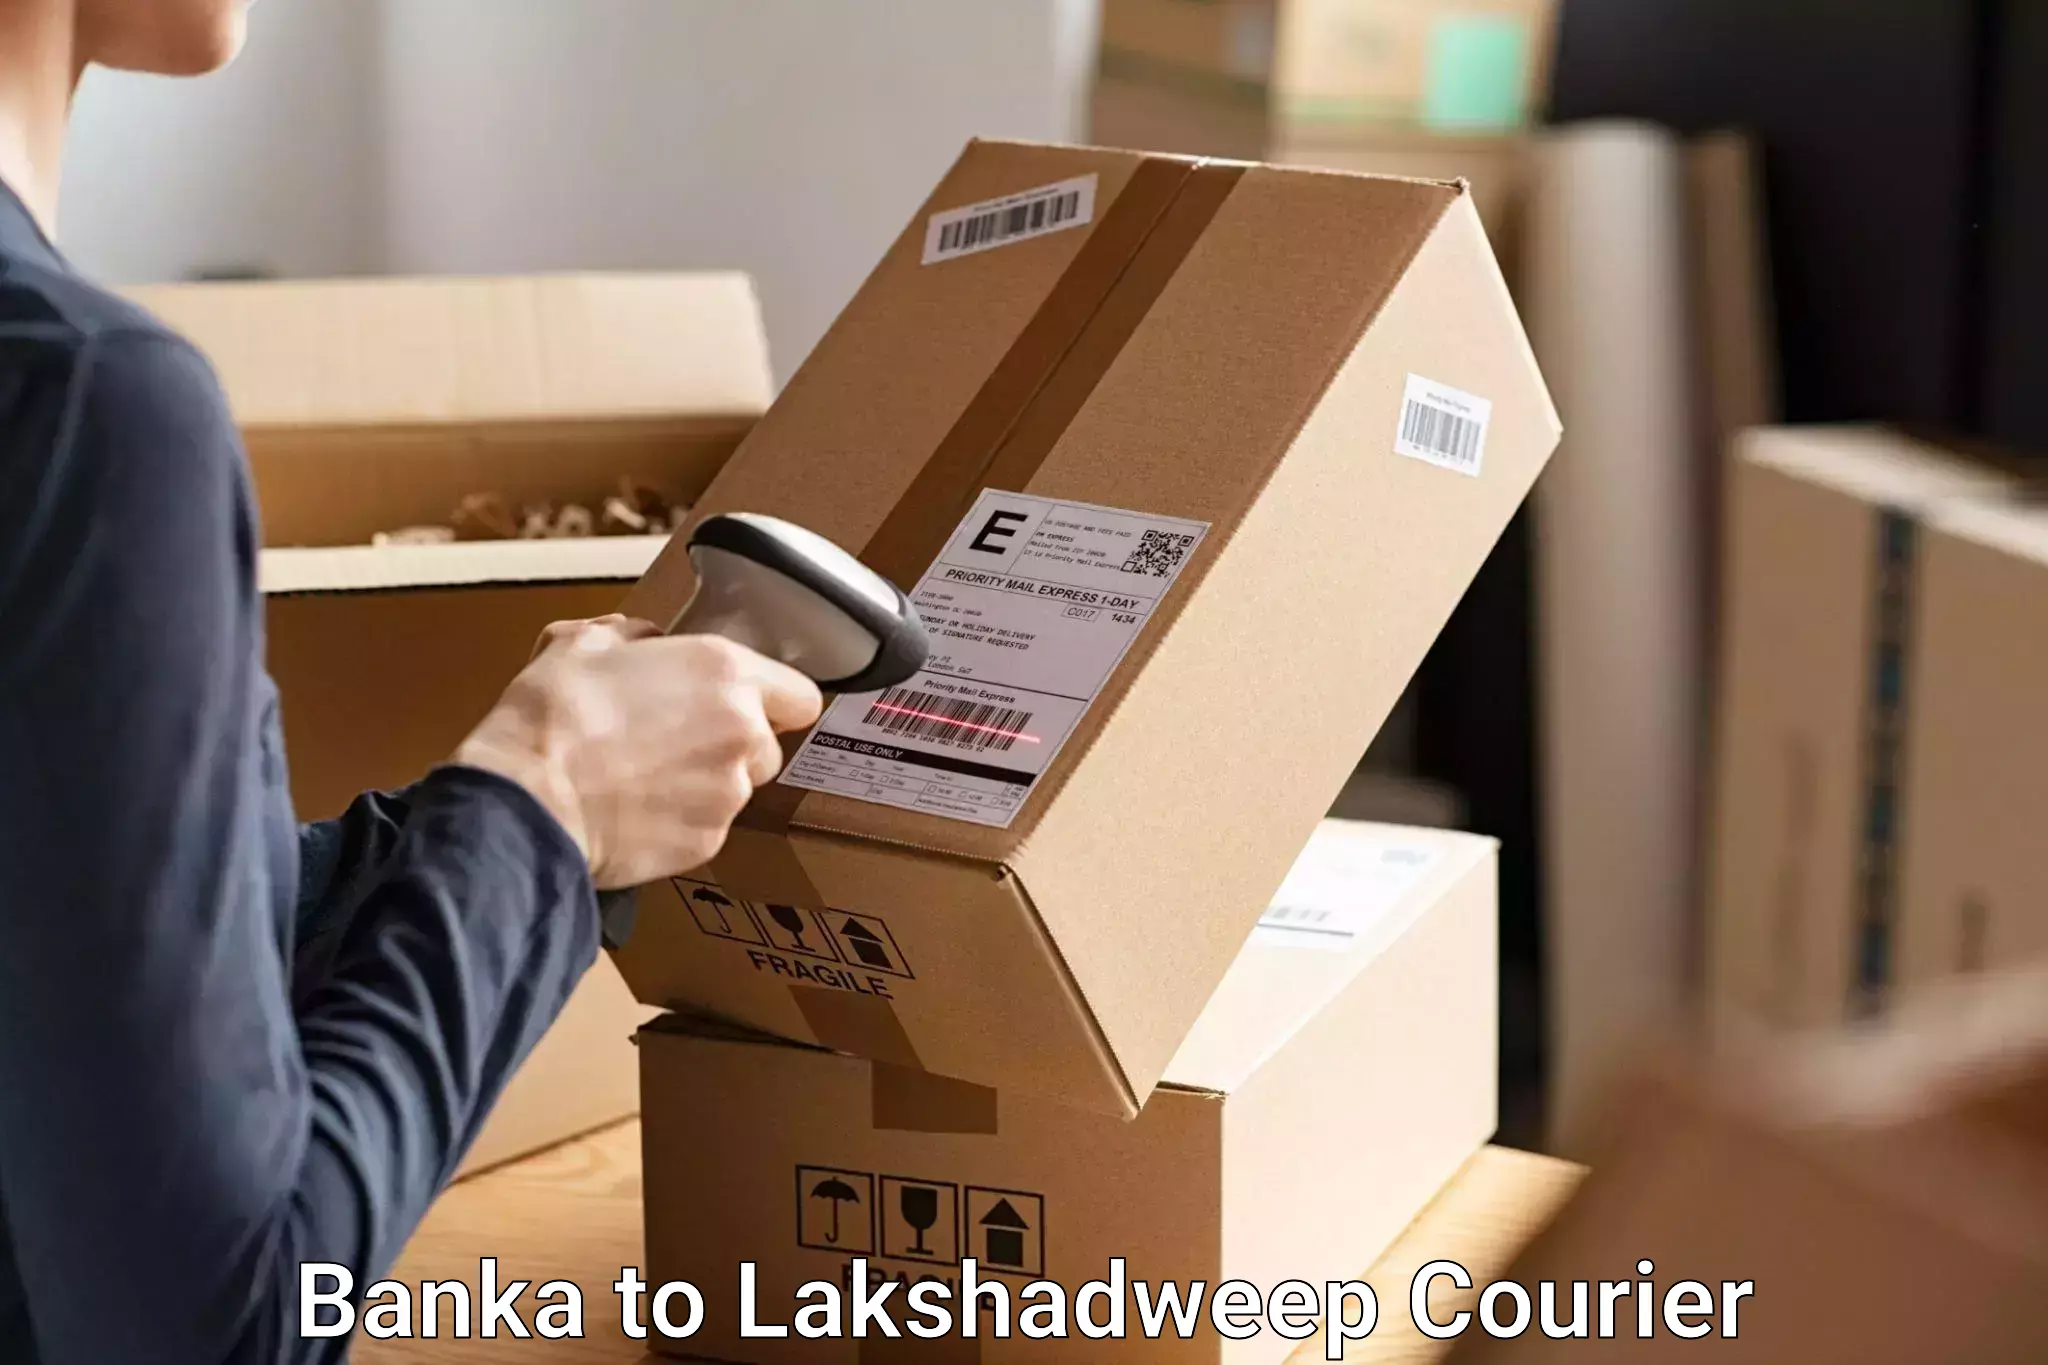 Baggage shipping experts in Banka to Lakshadweep